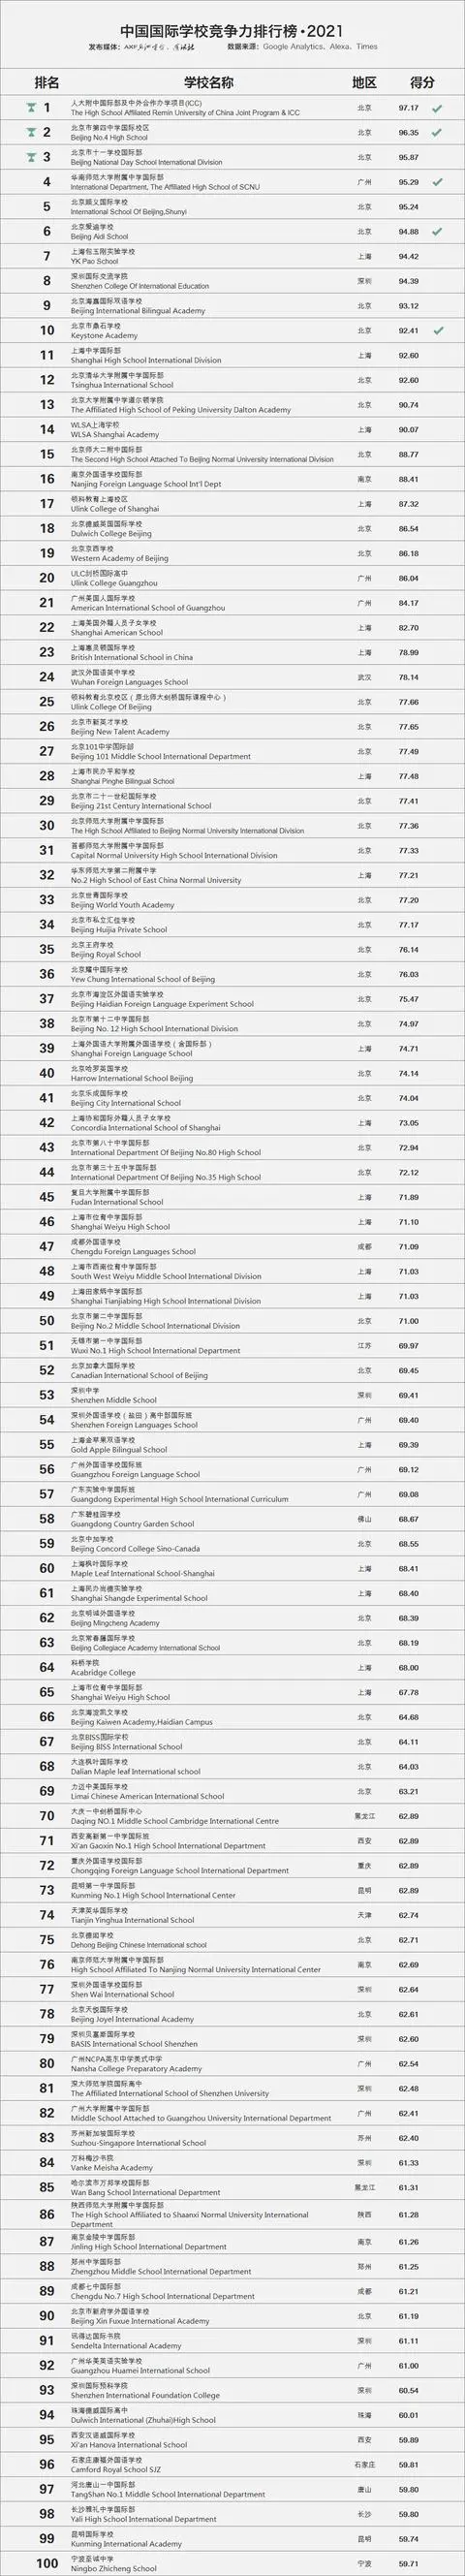 2021中国国际学校百强榜